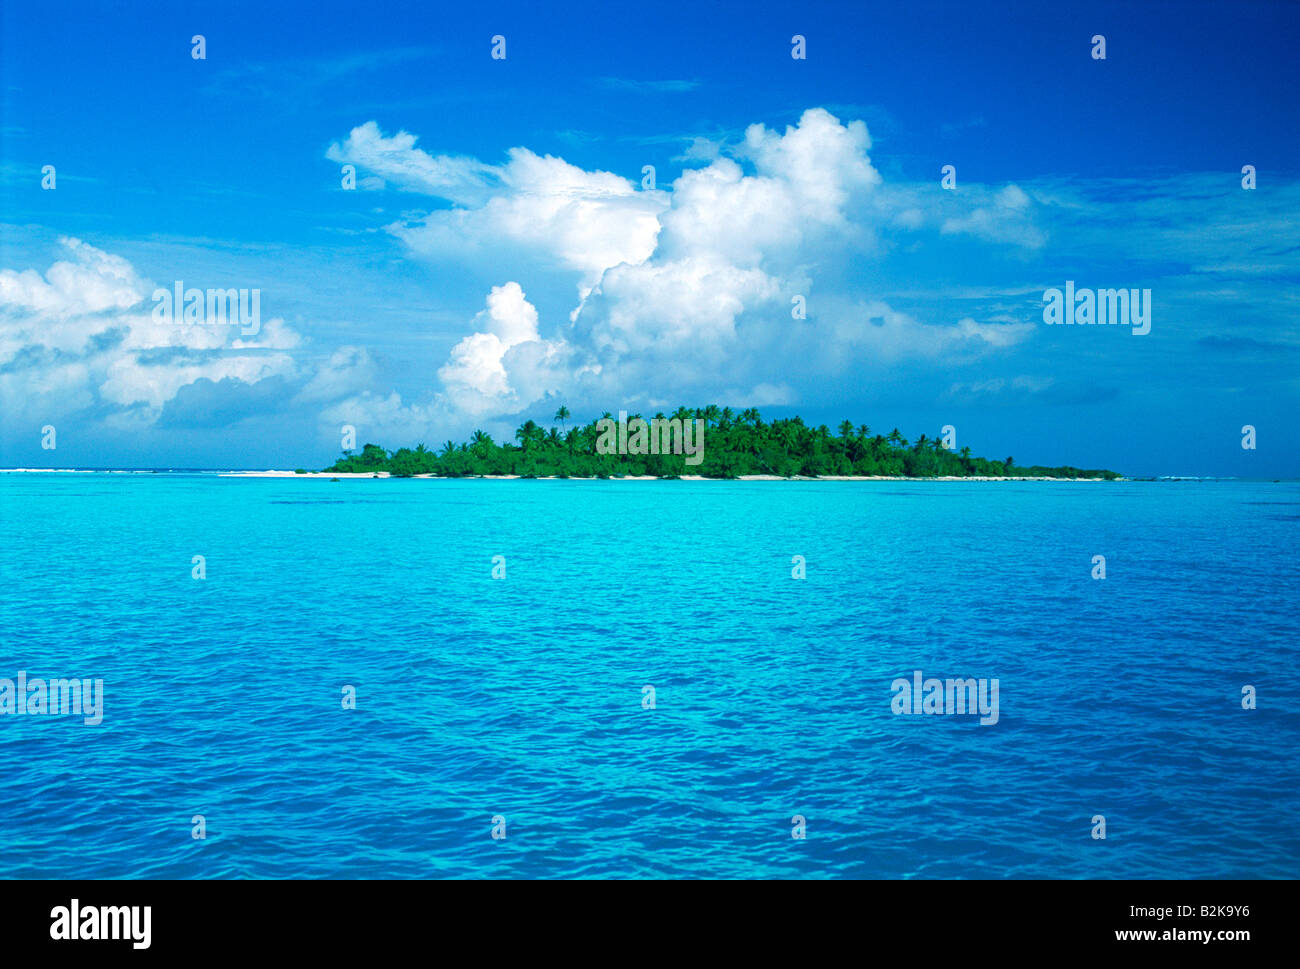 Entkommt der Wüste Insel oder einsame Insel in der Mitte des Aquablau Wasser repräsentieren Ferienorte und Urlaub Stockfoto